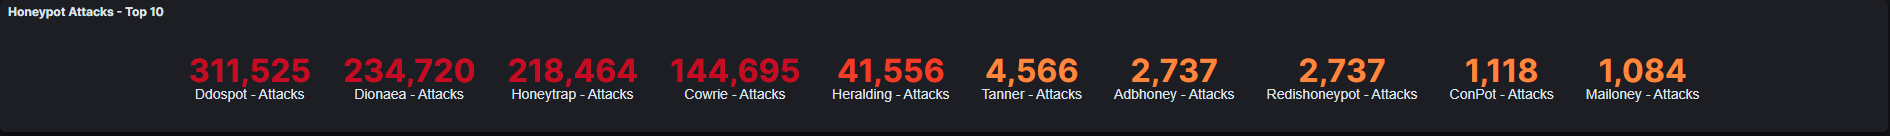 total-attacks